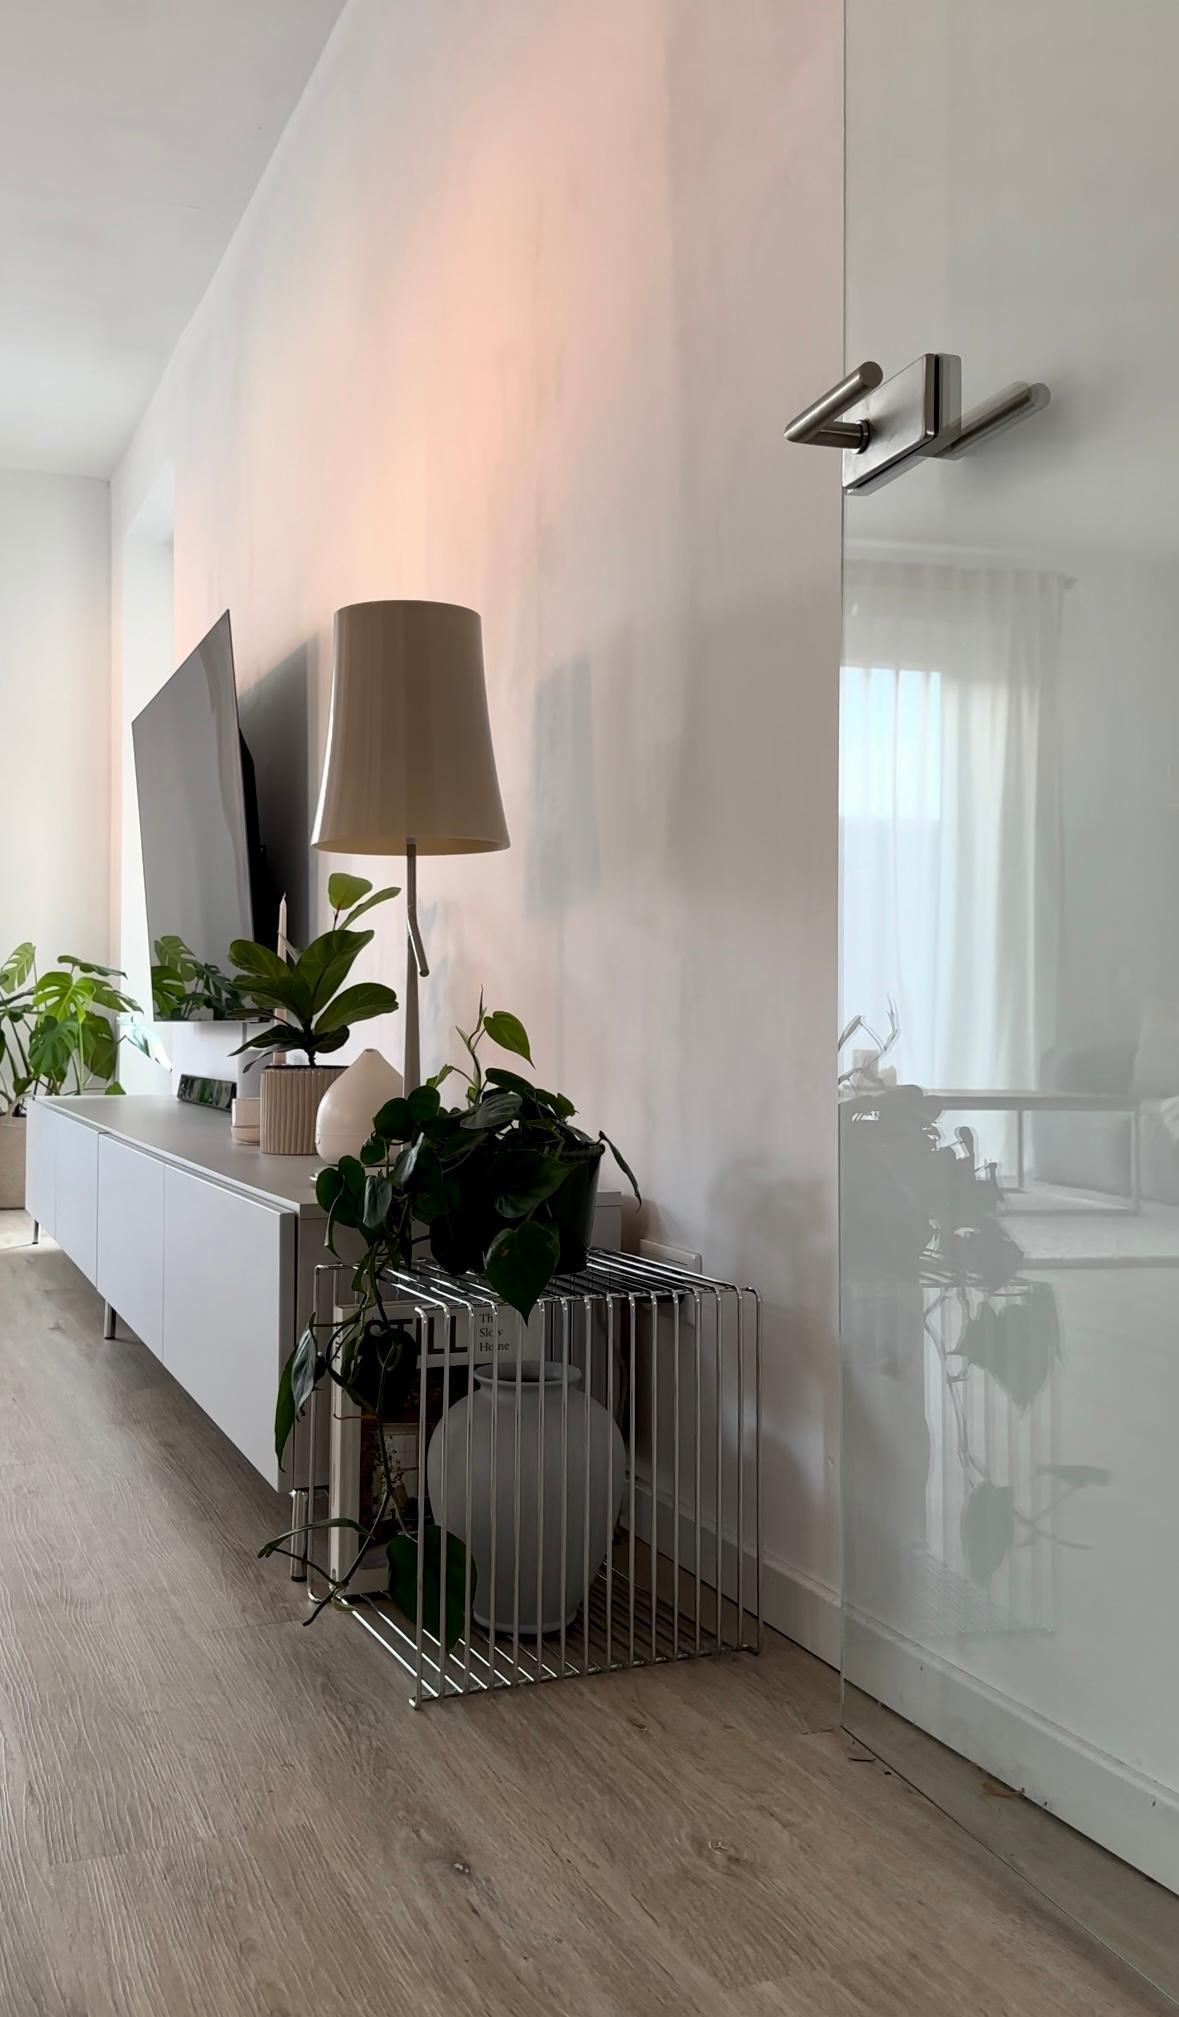 #wohnzimmer #sideboard #lowboard #stehlampe #dekoideen #tvboard #pflanzen #pflanzenliebe #couchliebt